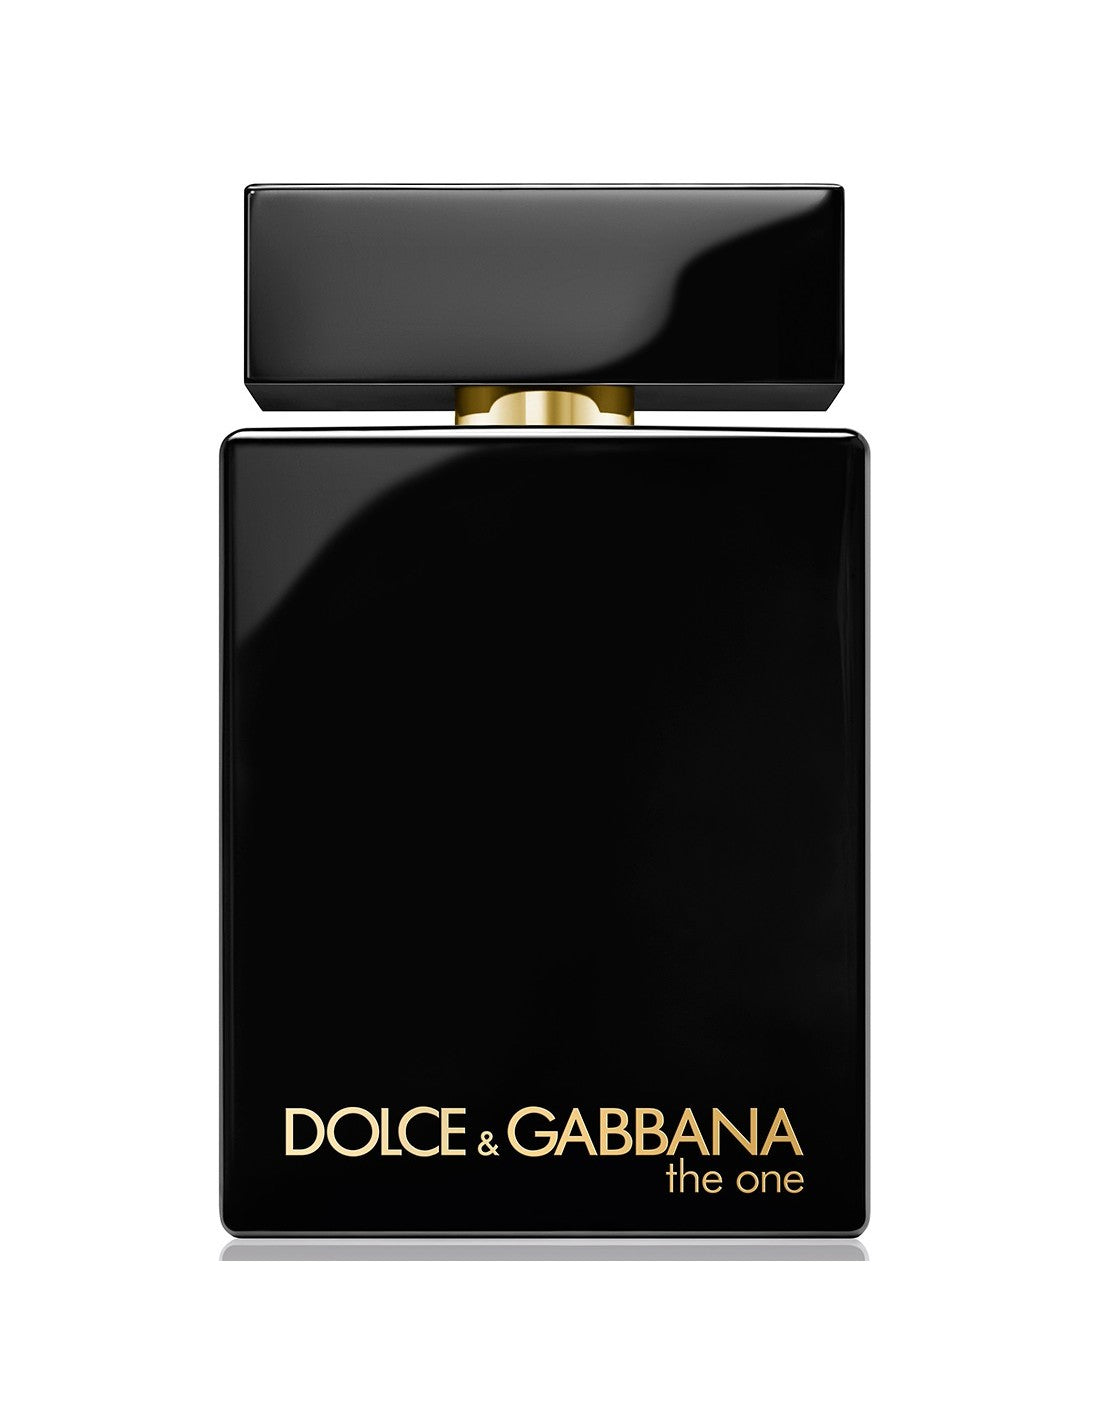 Dolce und Gabbana The One For Men EdP Intense Spray 100 ml